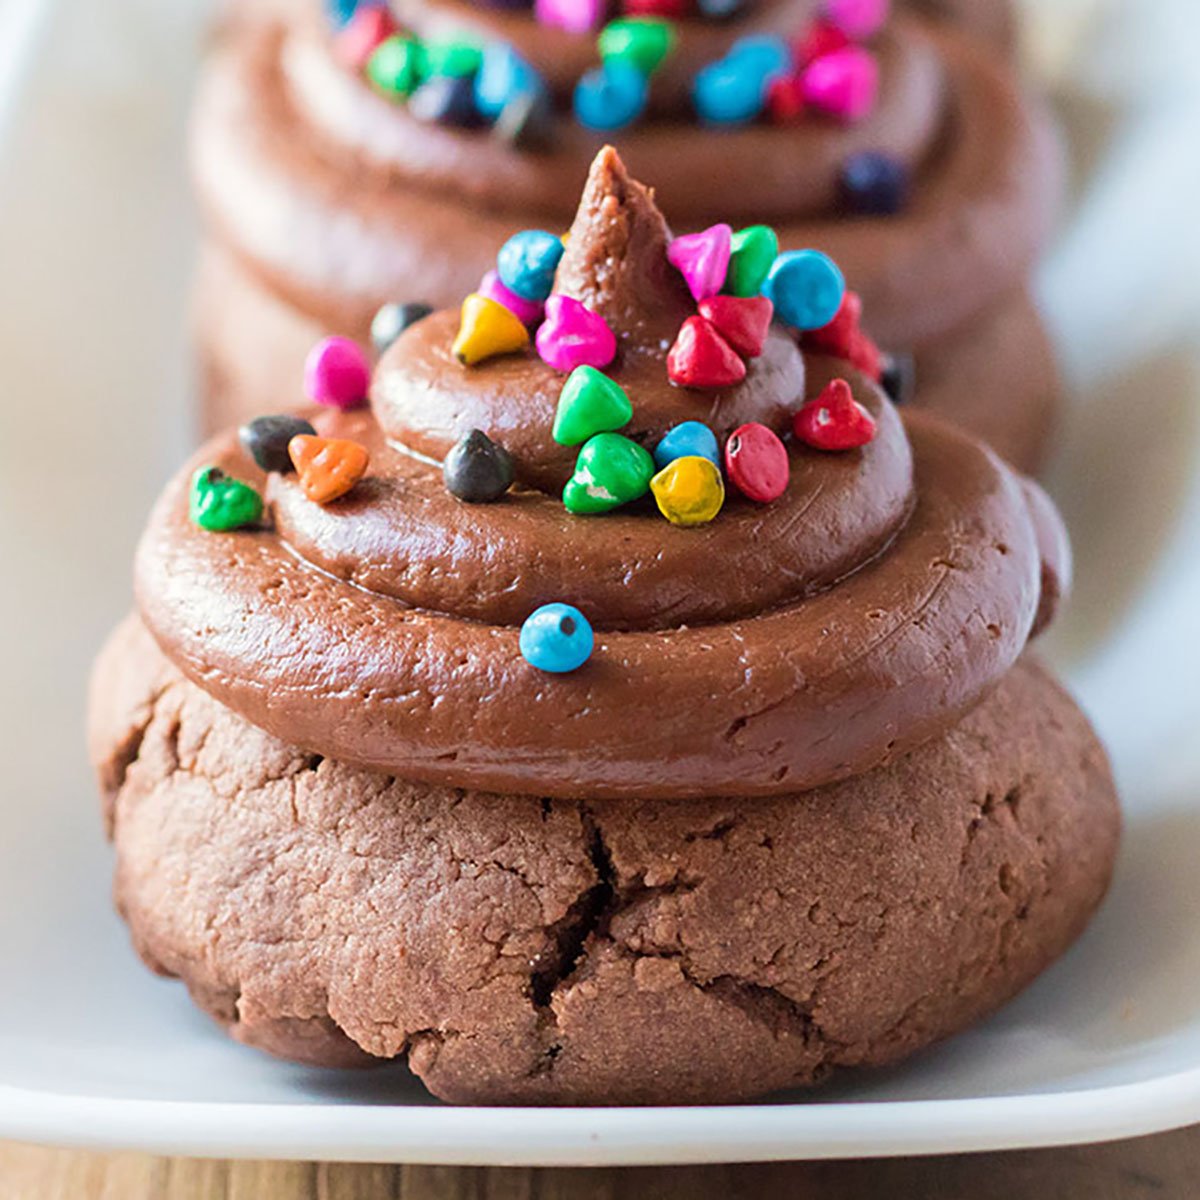 M&M Brownie Cookies - Fun Cookie Recipes